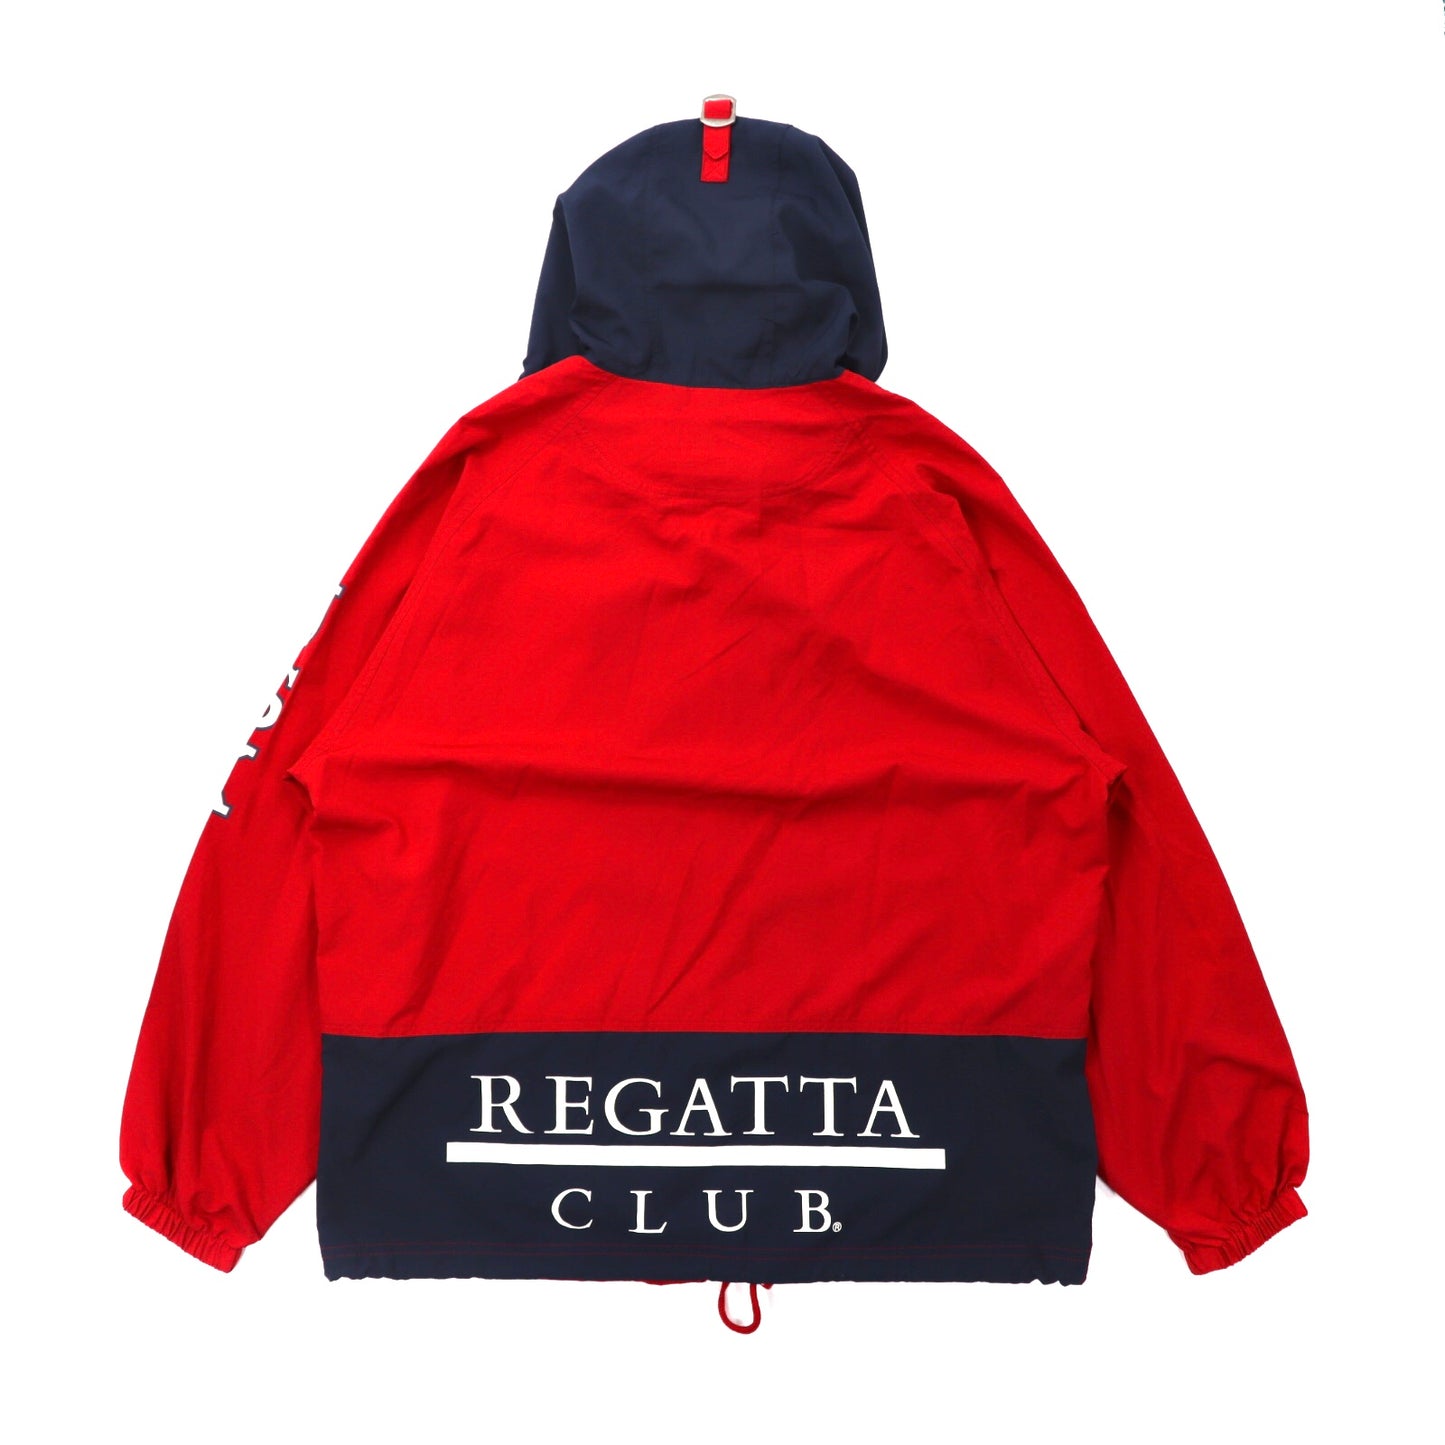 REGATTA CLUB セーリングジャケット M レッド ポリエステル ロゴプリント USAプリント 90年代